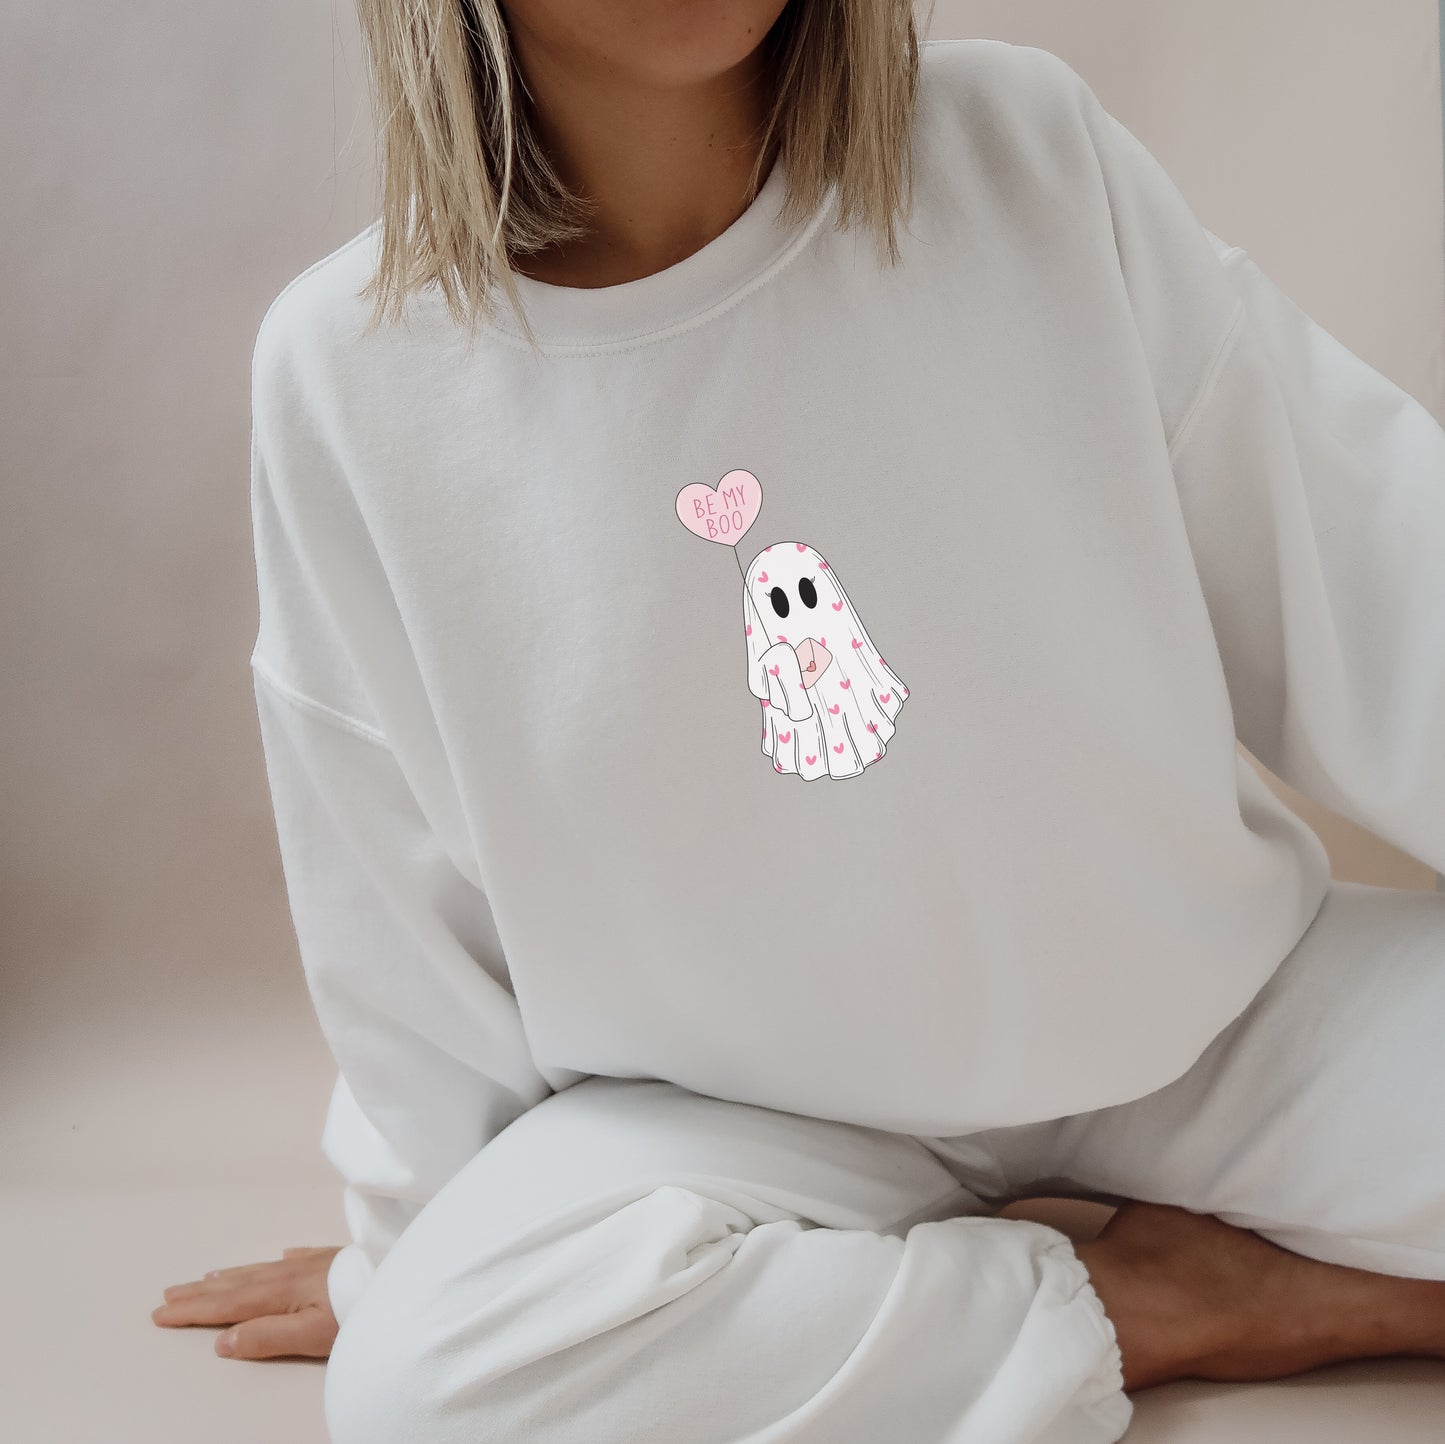 Valentine's Day Sweatshirt /  Be my Boo / Valentines Ghost design sweatshirt crewneck